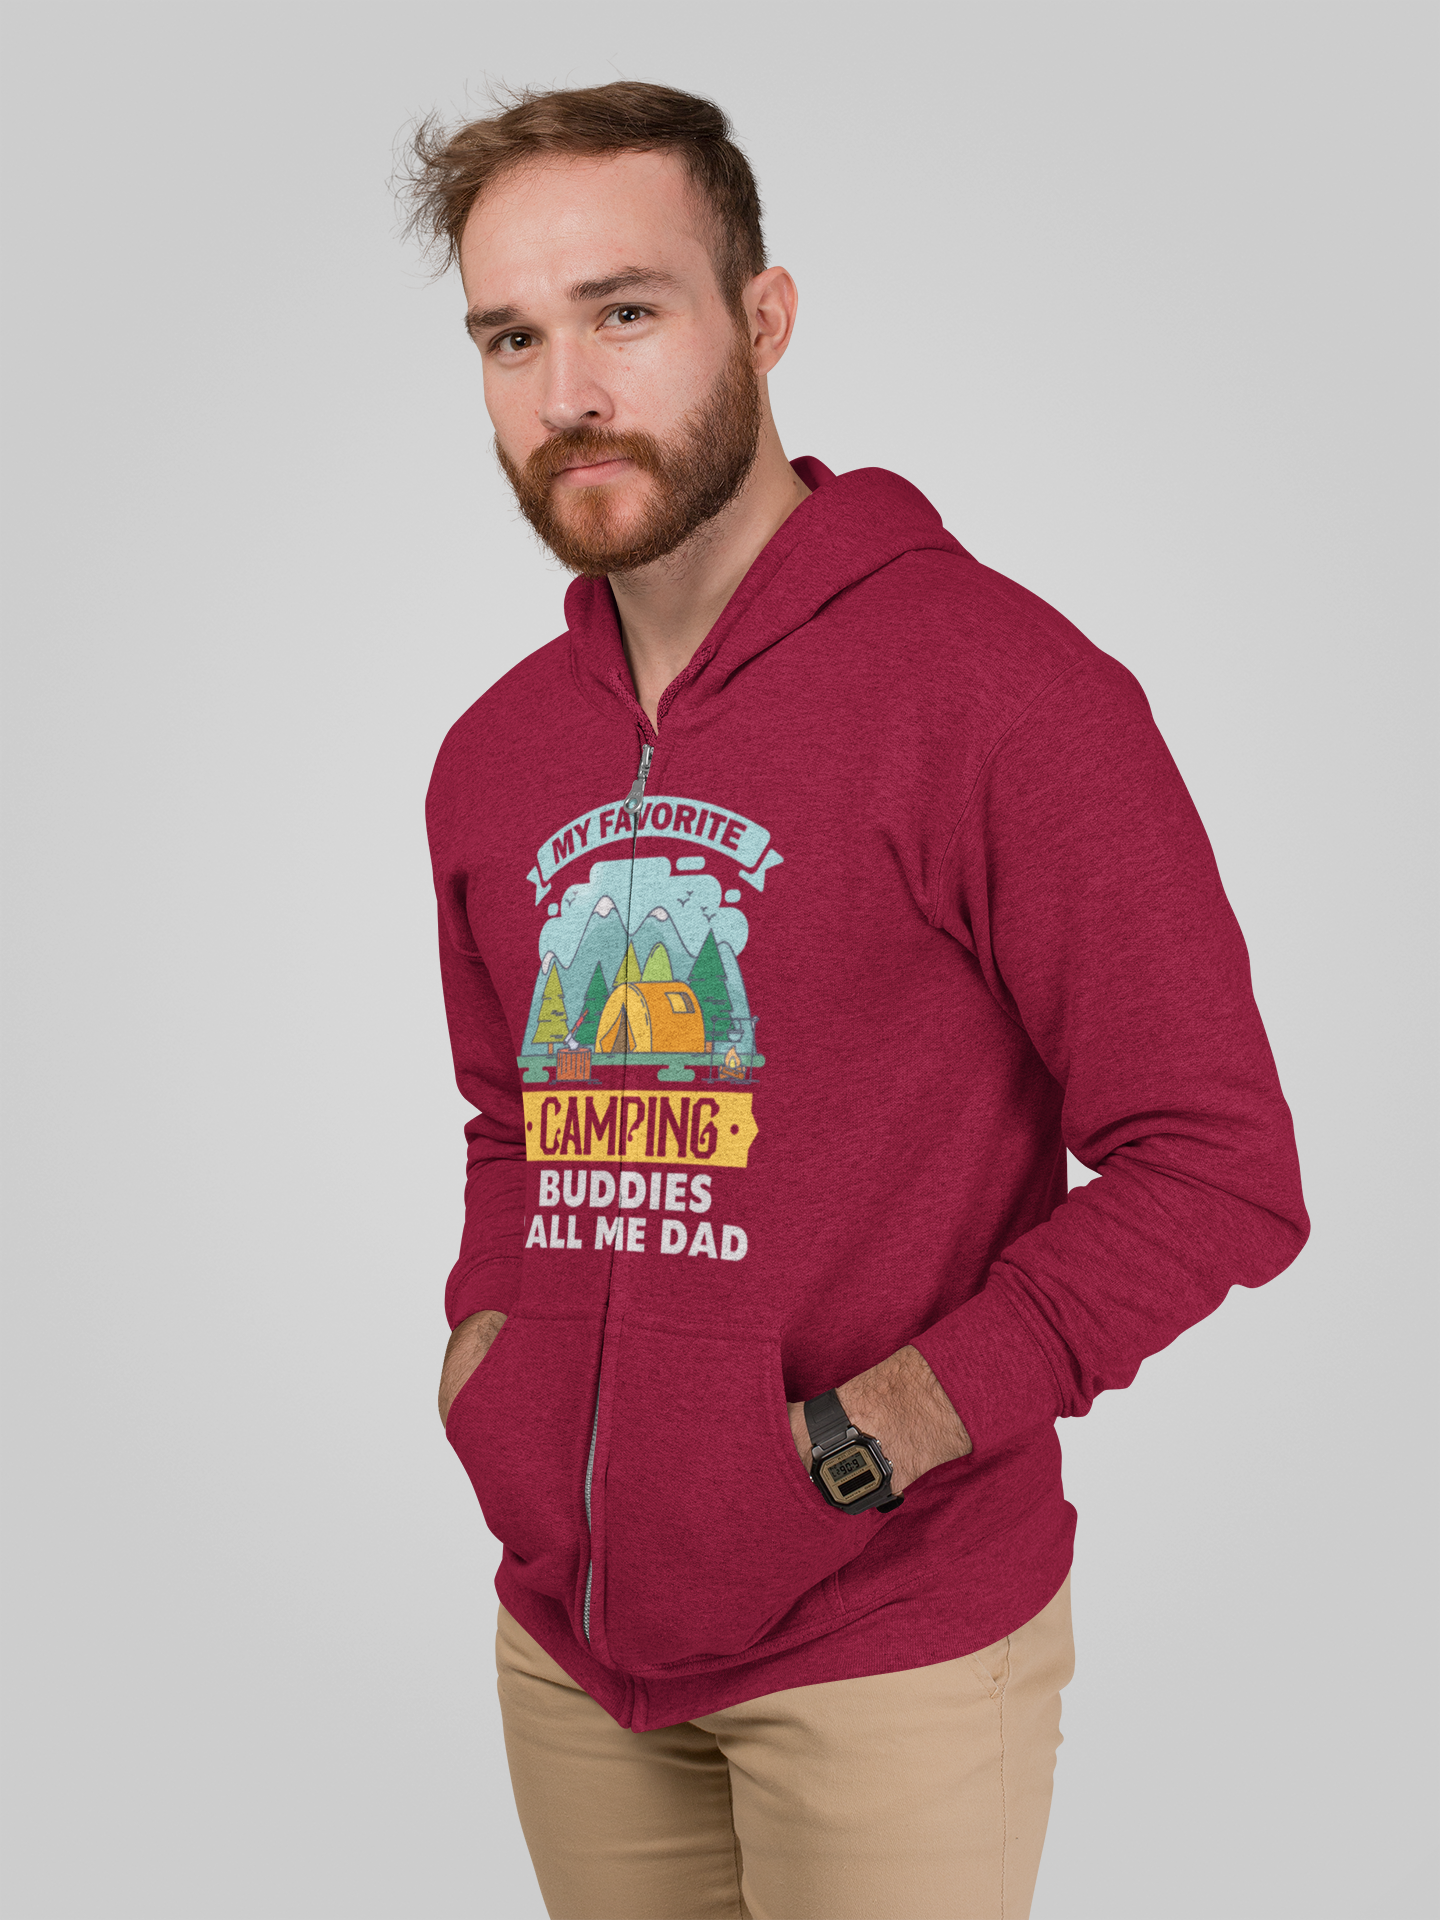 My favorite camping buddies; Full-zip hoodie sweatshirt